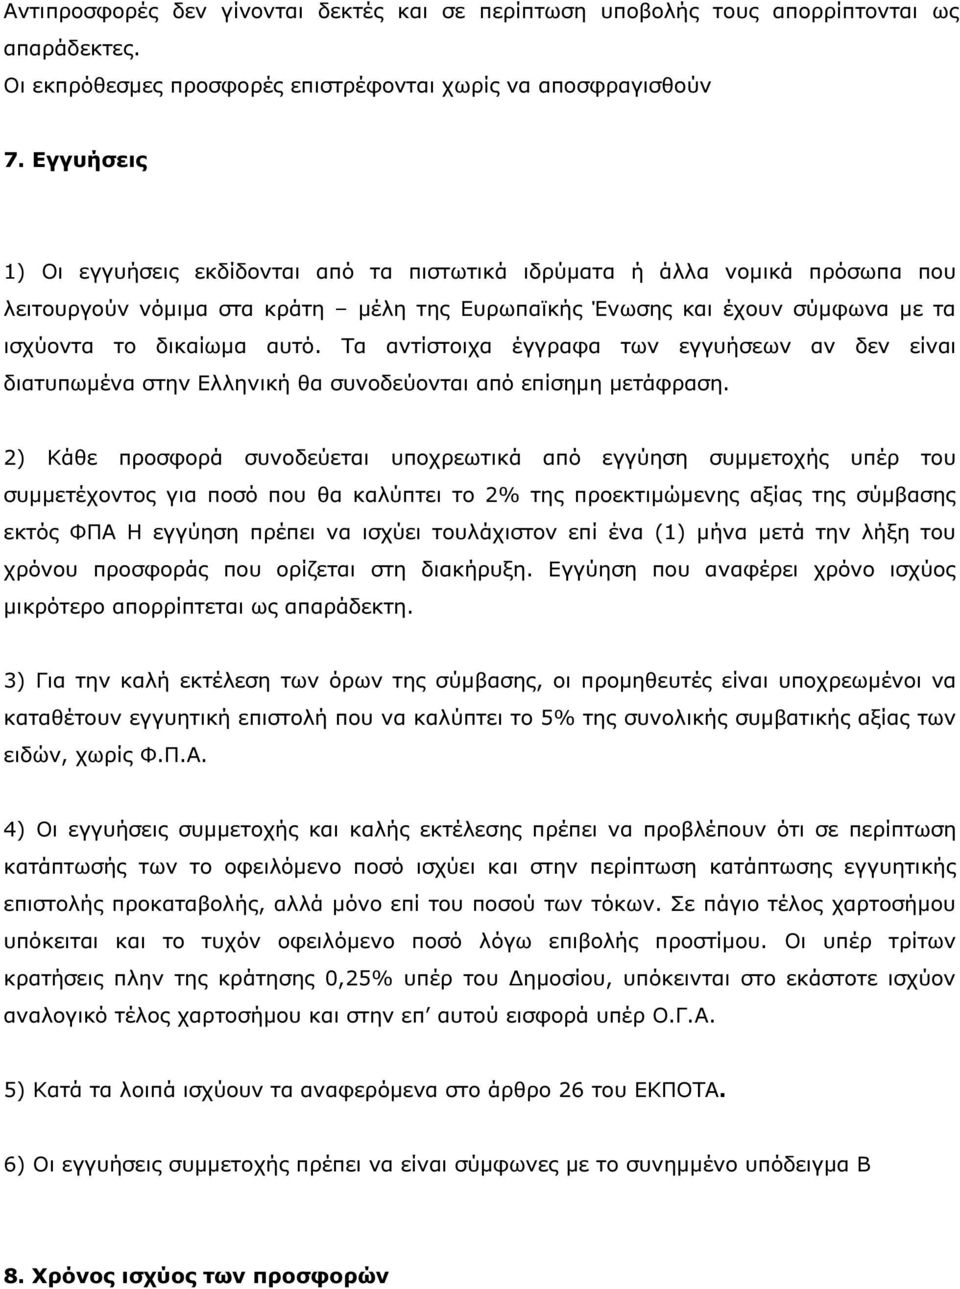 Τα αντίστοιχα έγγραφα των εγγυήσεων αν δεν είναι διατυπωµένα στην Ελληνική θα συνοδεύονται από επίσηµη µετάφραση.